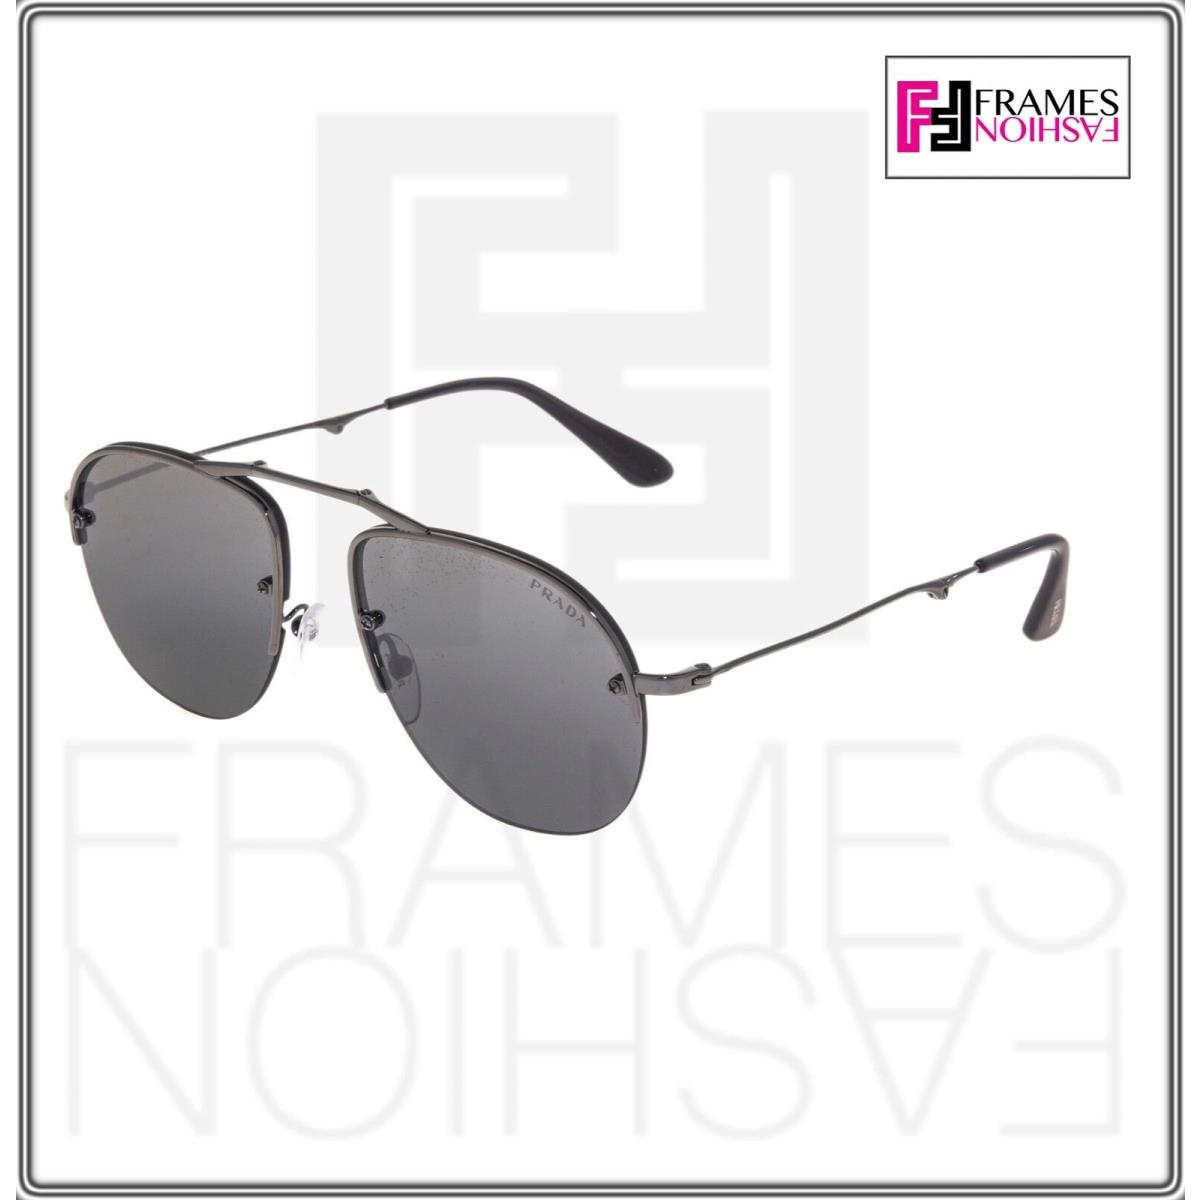 Prada sunglasses  - 5AV-205 , Gunmetal Frame, Silver Lens 2